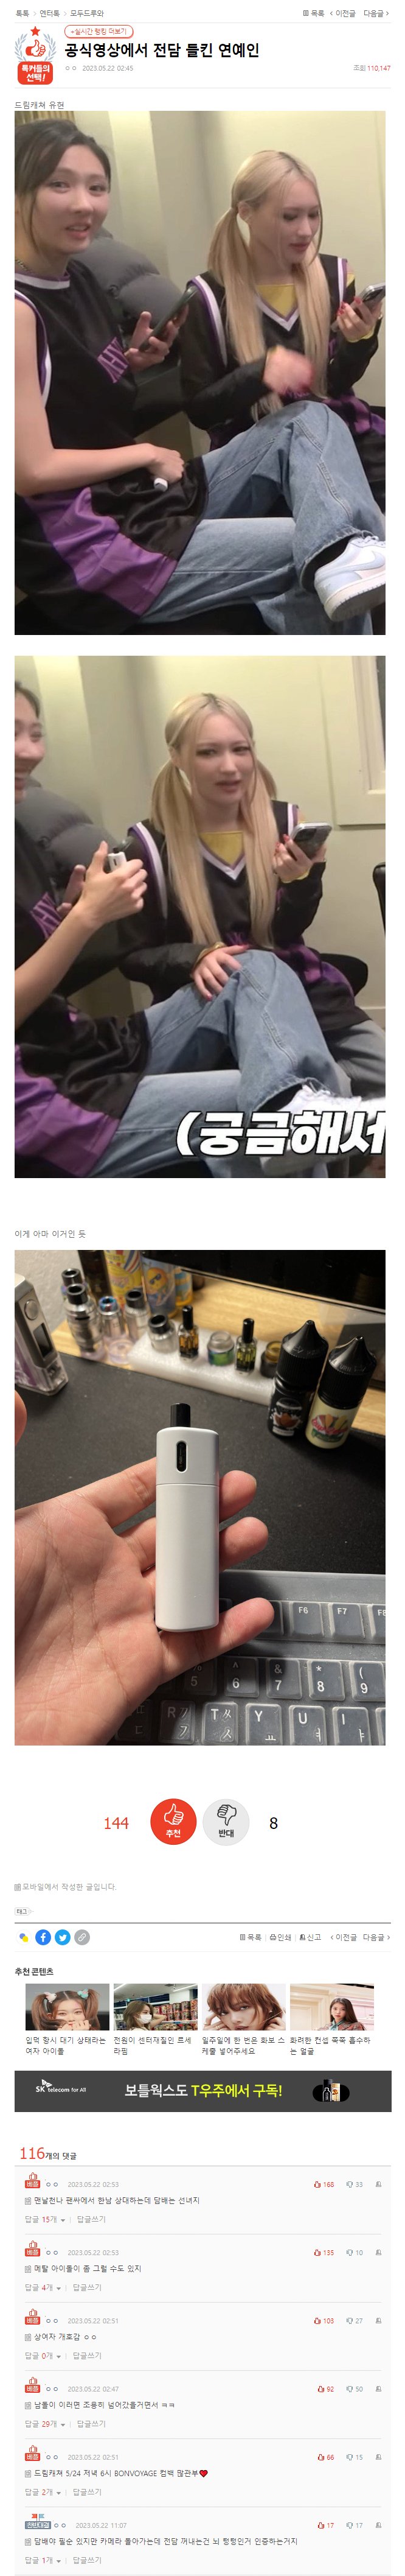 공식영상에서 전자담배 들킨....걸그룹 멤버.jpg